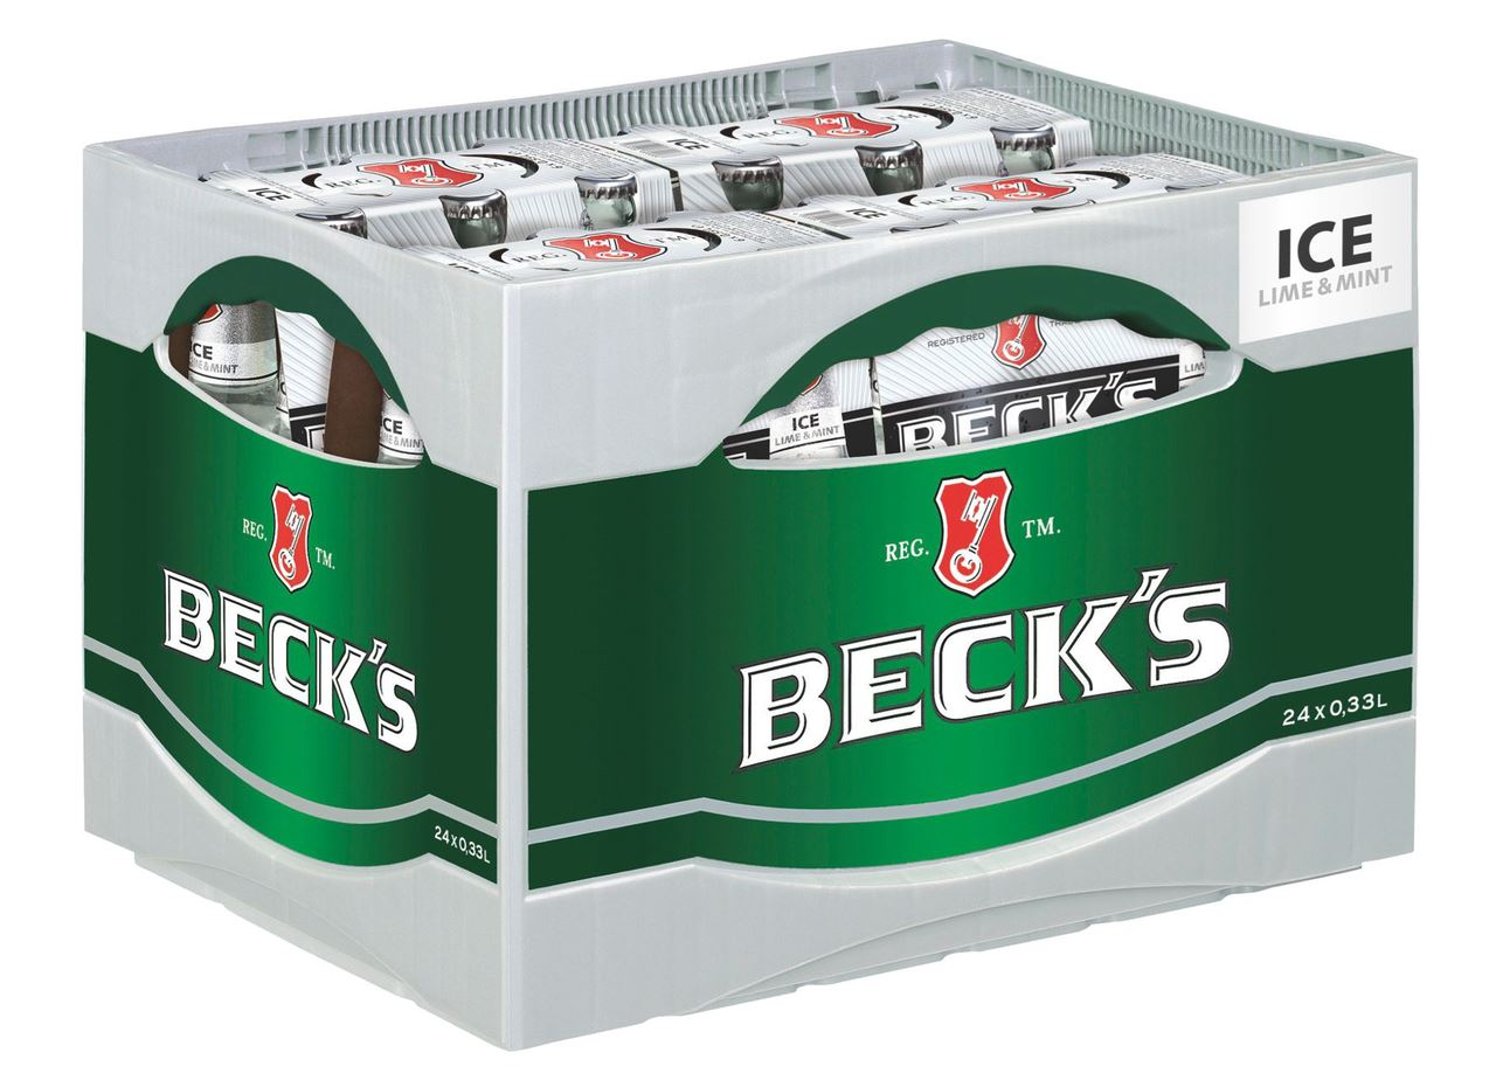 Beck's Ice, Lime & Mint mit Lime-Mint-Geschmack 24 x 0,33 l Flaschen